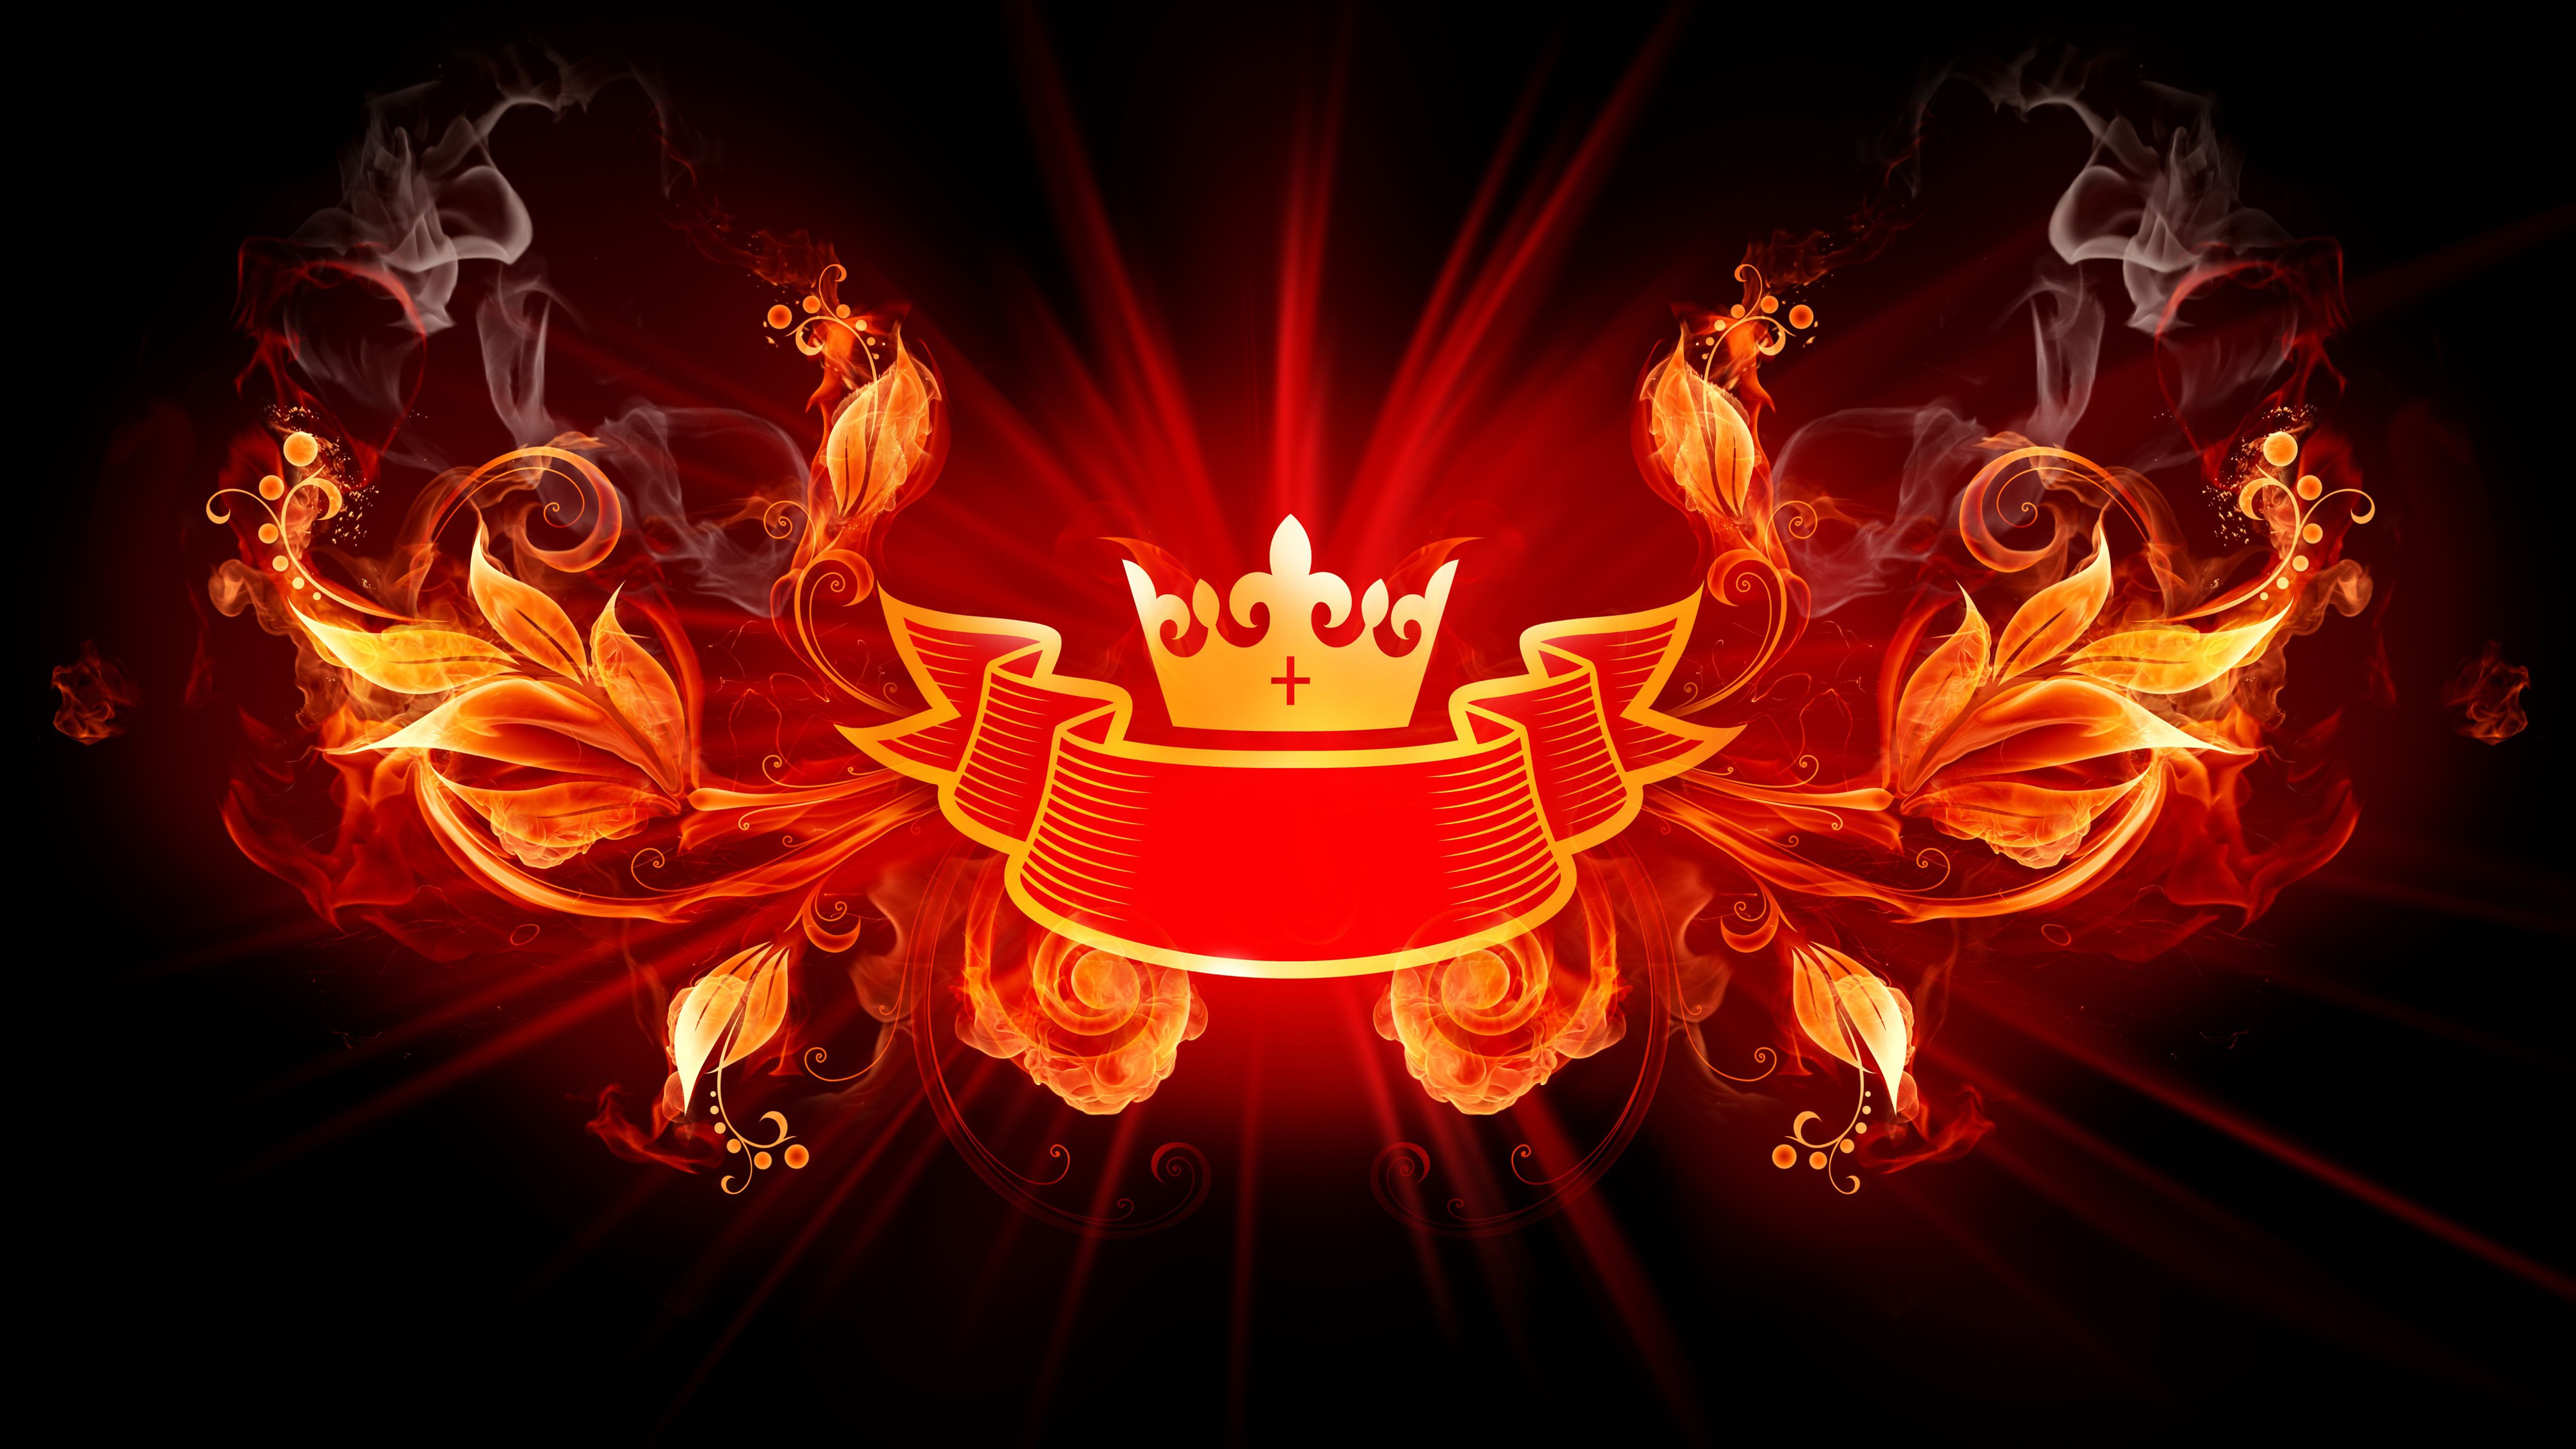 Red Fire King Crown Logo 4K 5K HD Wallpaper